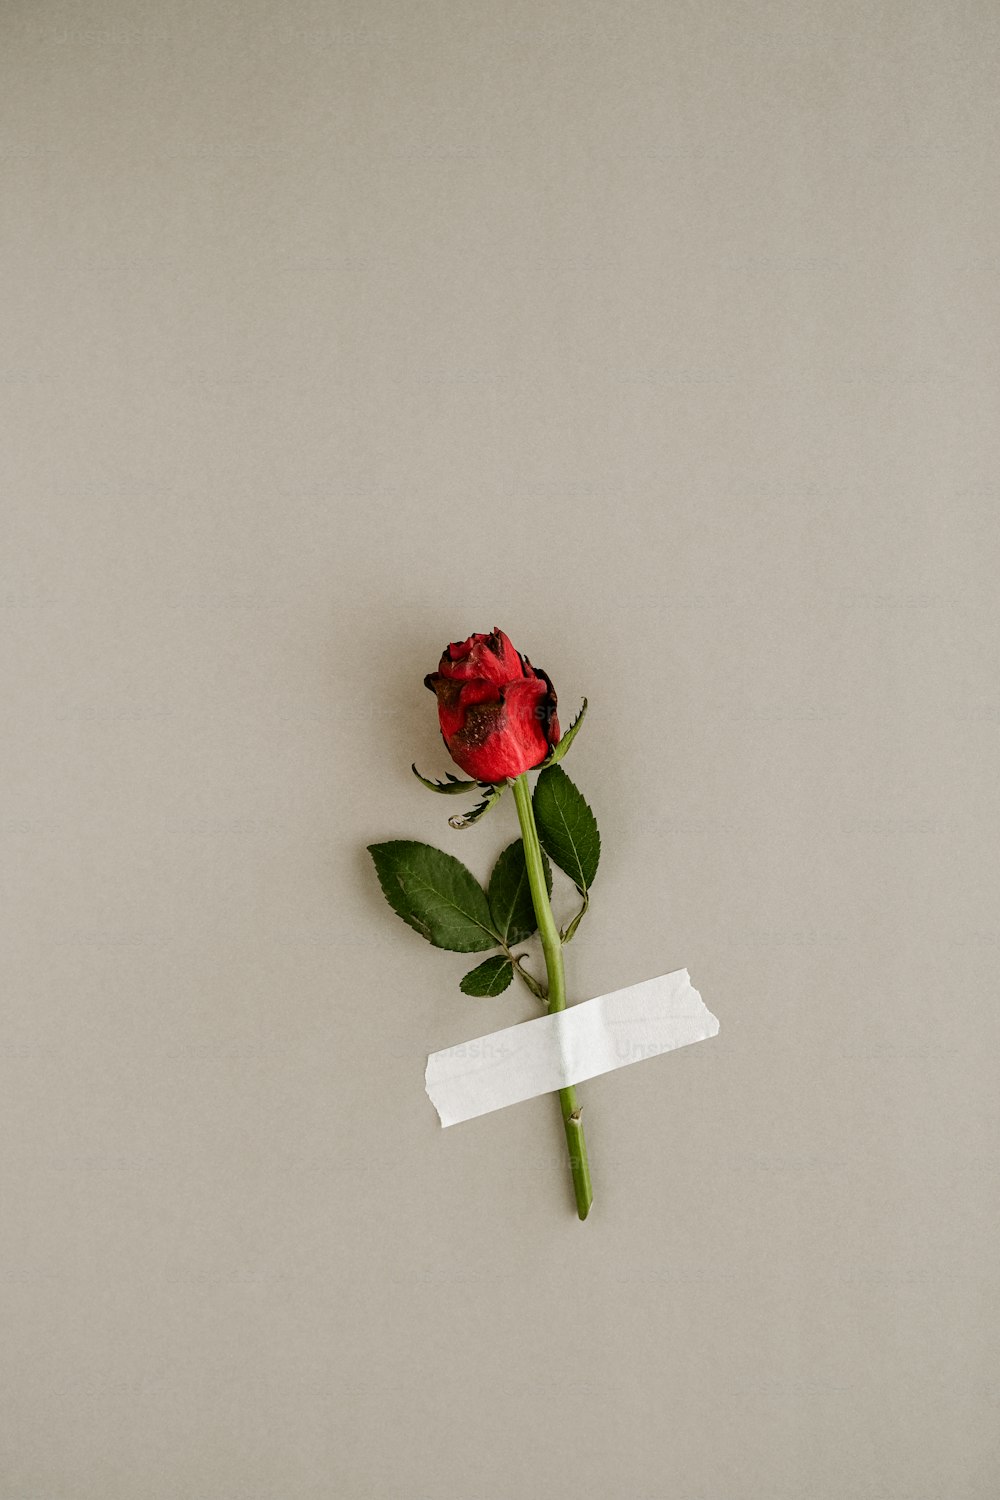 uma única rosa vermelha com um pedaço de papel colado nela